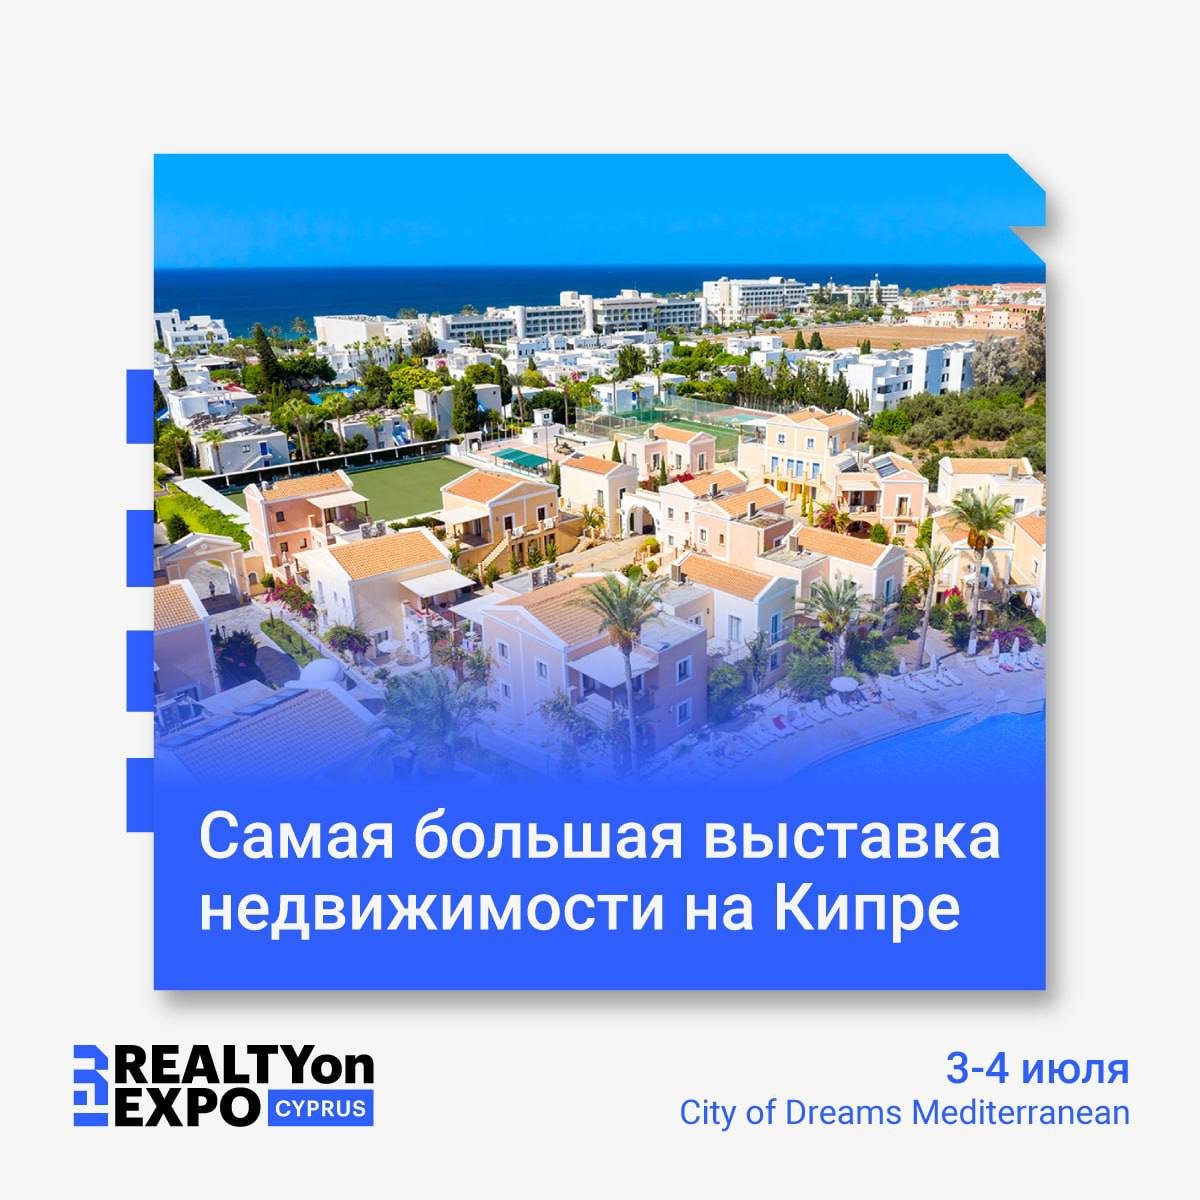 REALTYonEXPO Kipra Lielākā nekustamā īpašuma izstāde Kiprā